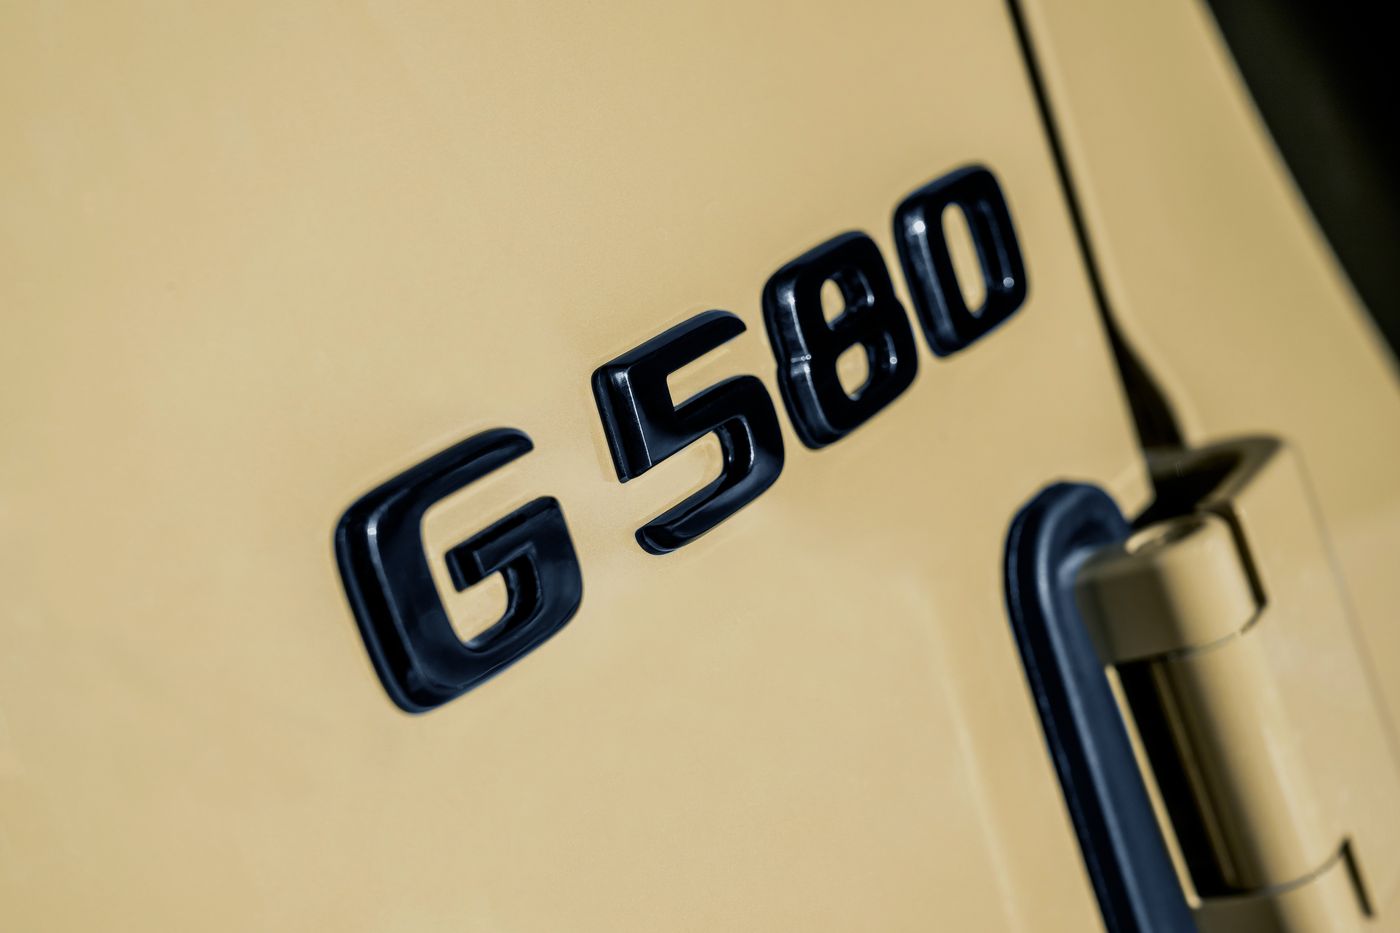 El rey de los todoterrenos, el Mercedes Clase G, se hace eléctrico 100% con cuatro motores, 587 caballos, batería de 116 kWh y 473 kilómetros de autonomía